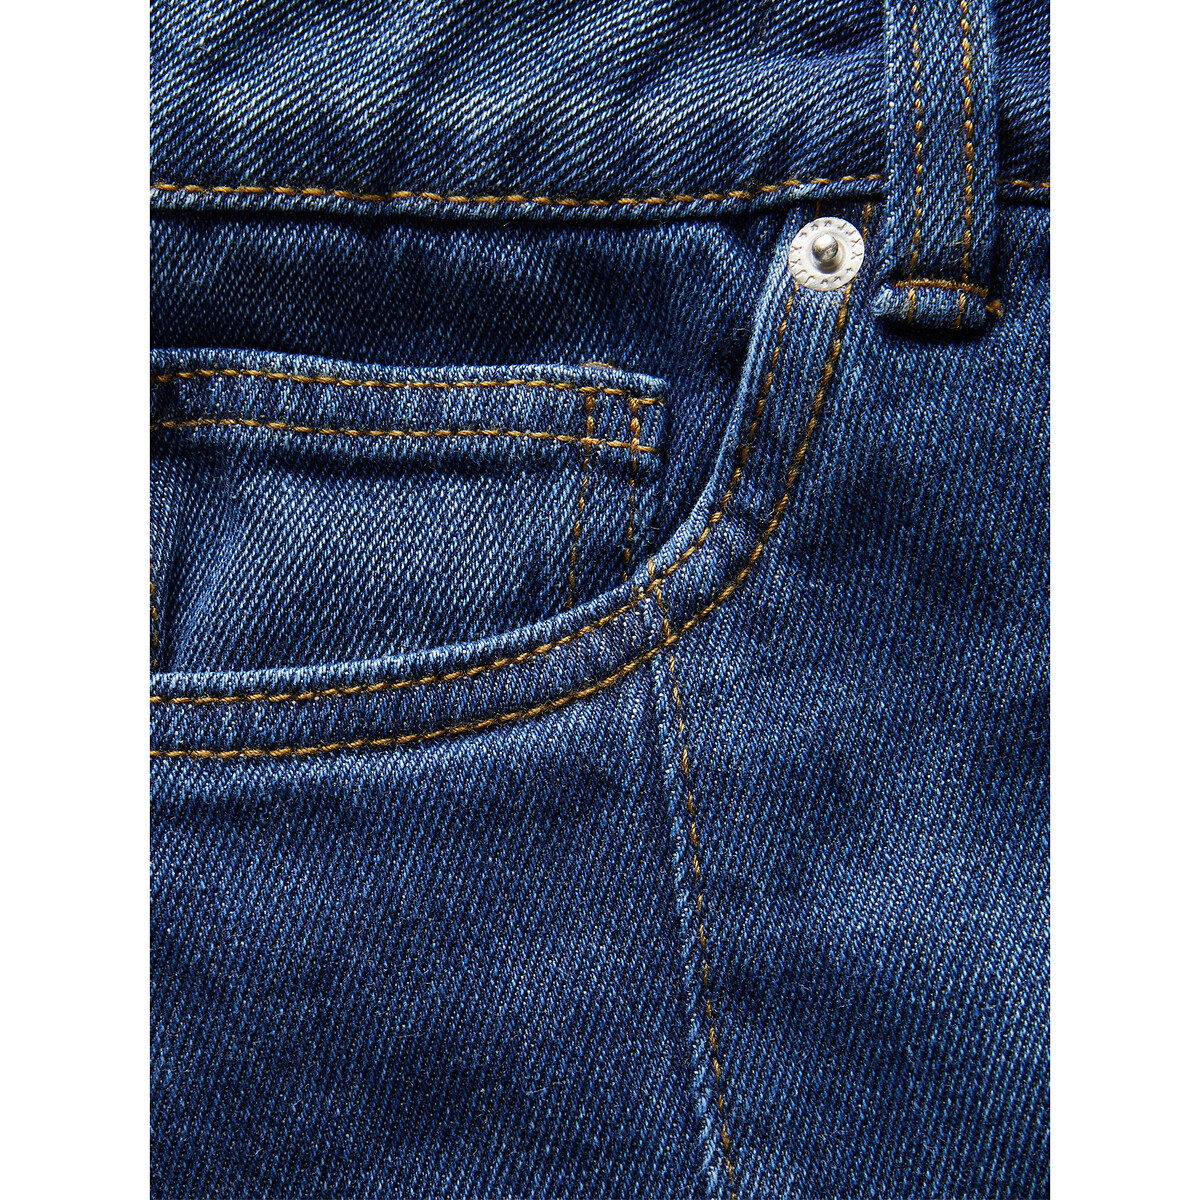 Юбка Короткая джинсовая высокий пояс S синий LaRedoute, размер S - фото 5